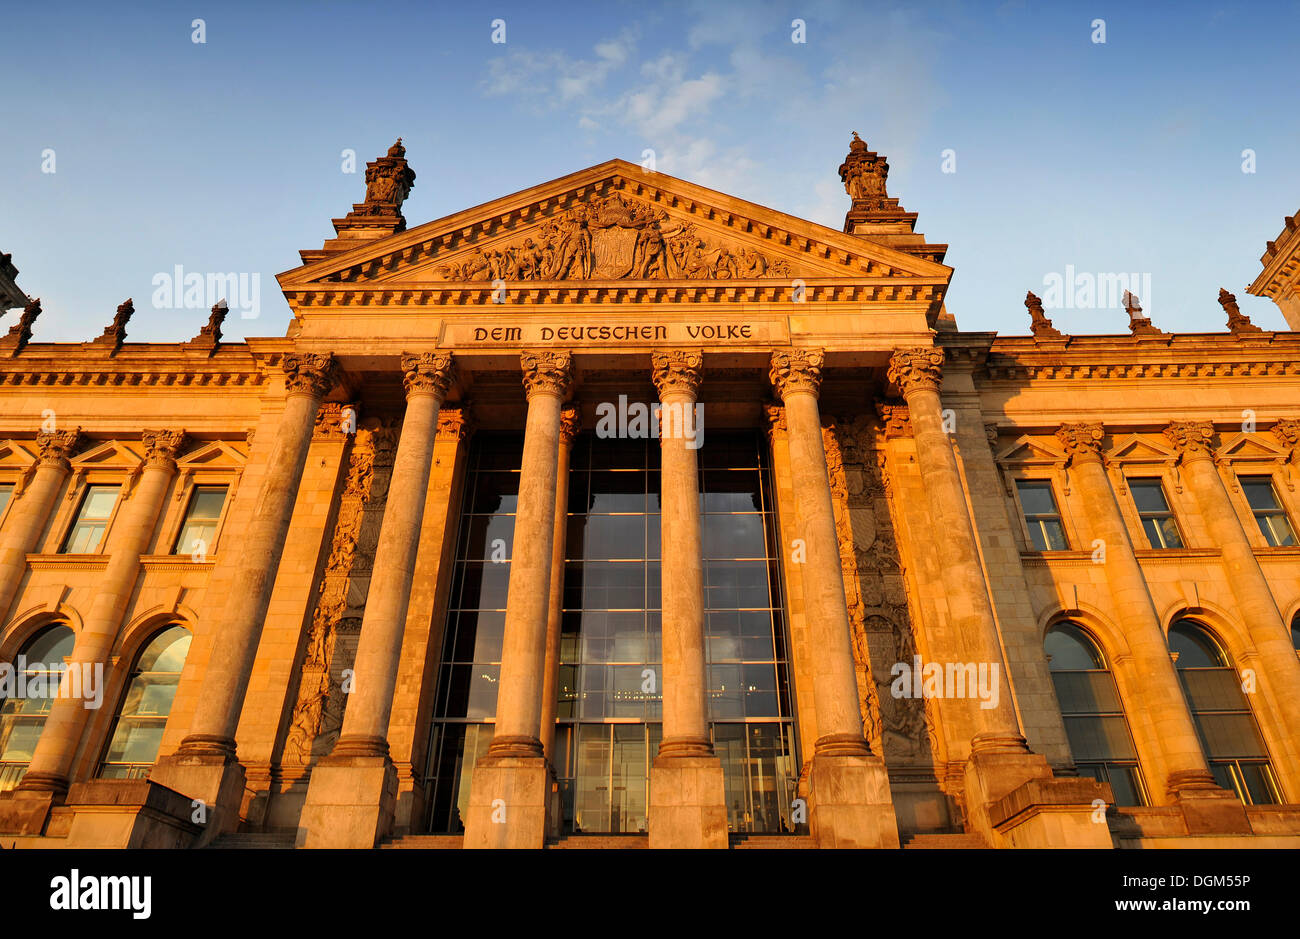 Abendlicht auf dem Deutschen Reichstag, Worte "Dem Deutschen Volke" oder "Dem deutschen Volke" und Entlastung in der Stockfoto